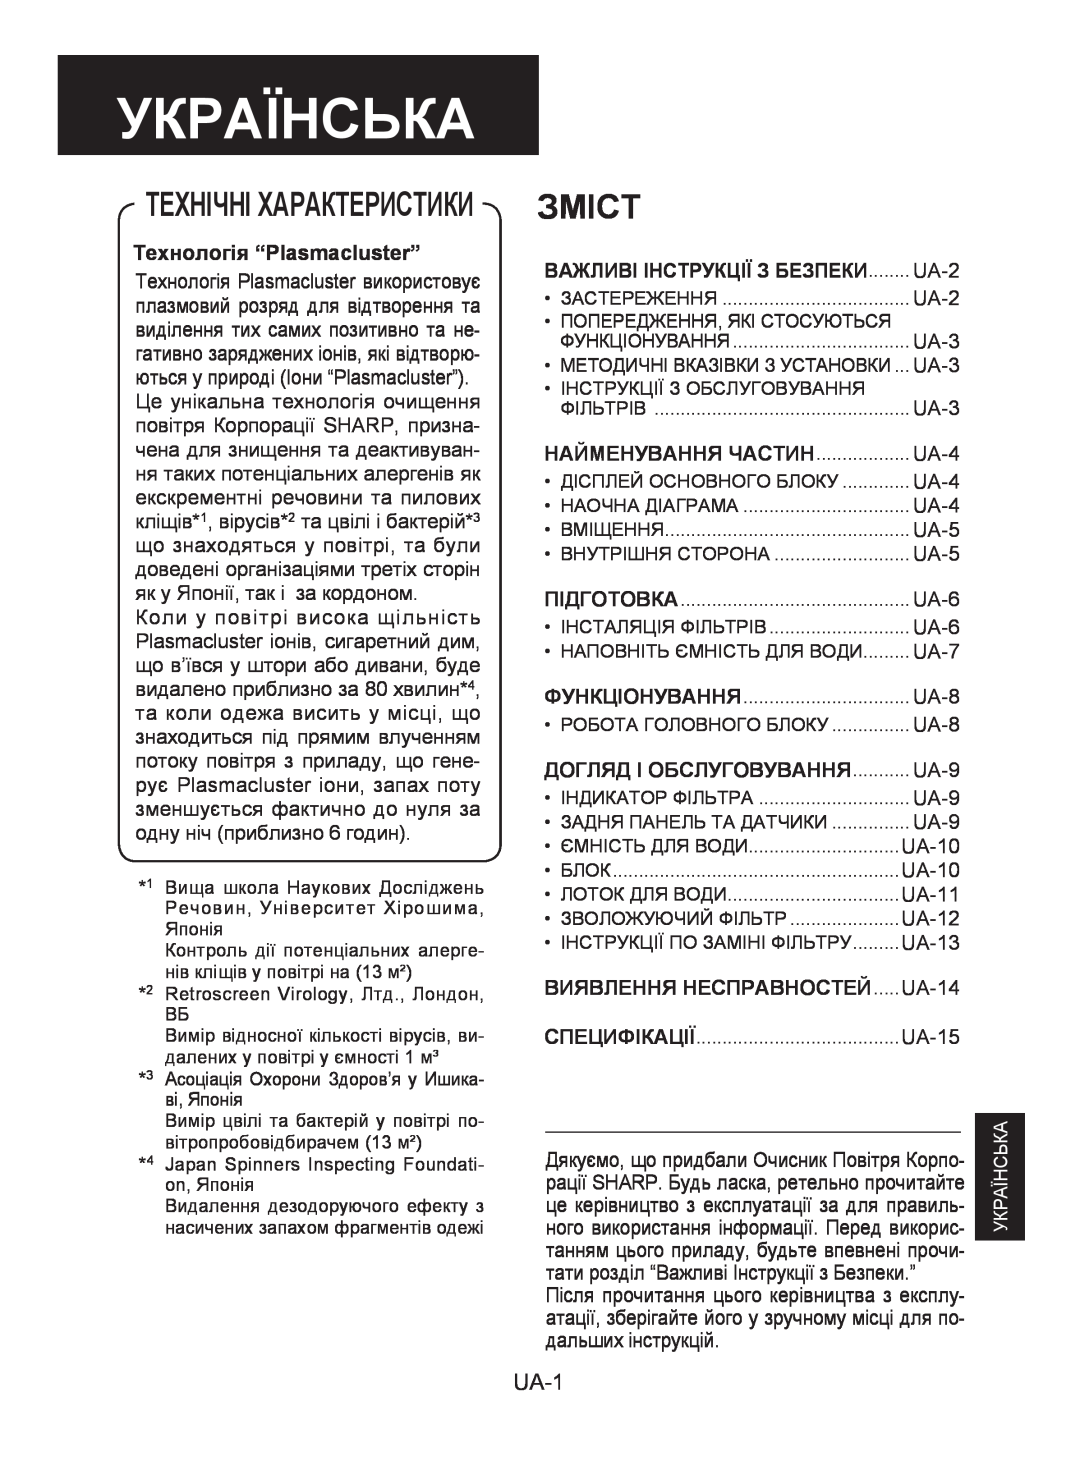 Sharp KC-930E operation manual Українська, Зміст, Технічні Характеристики, UA-1, Технологія “Plasmacluster” 